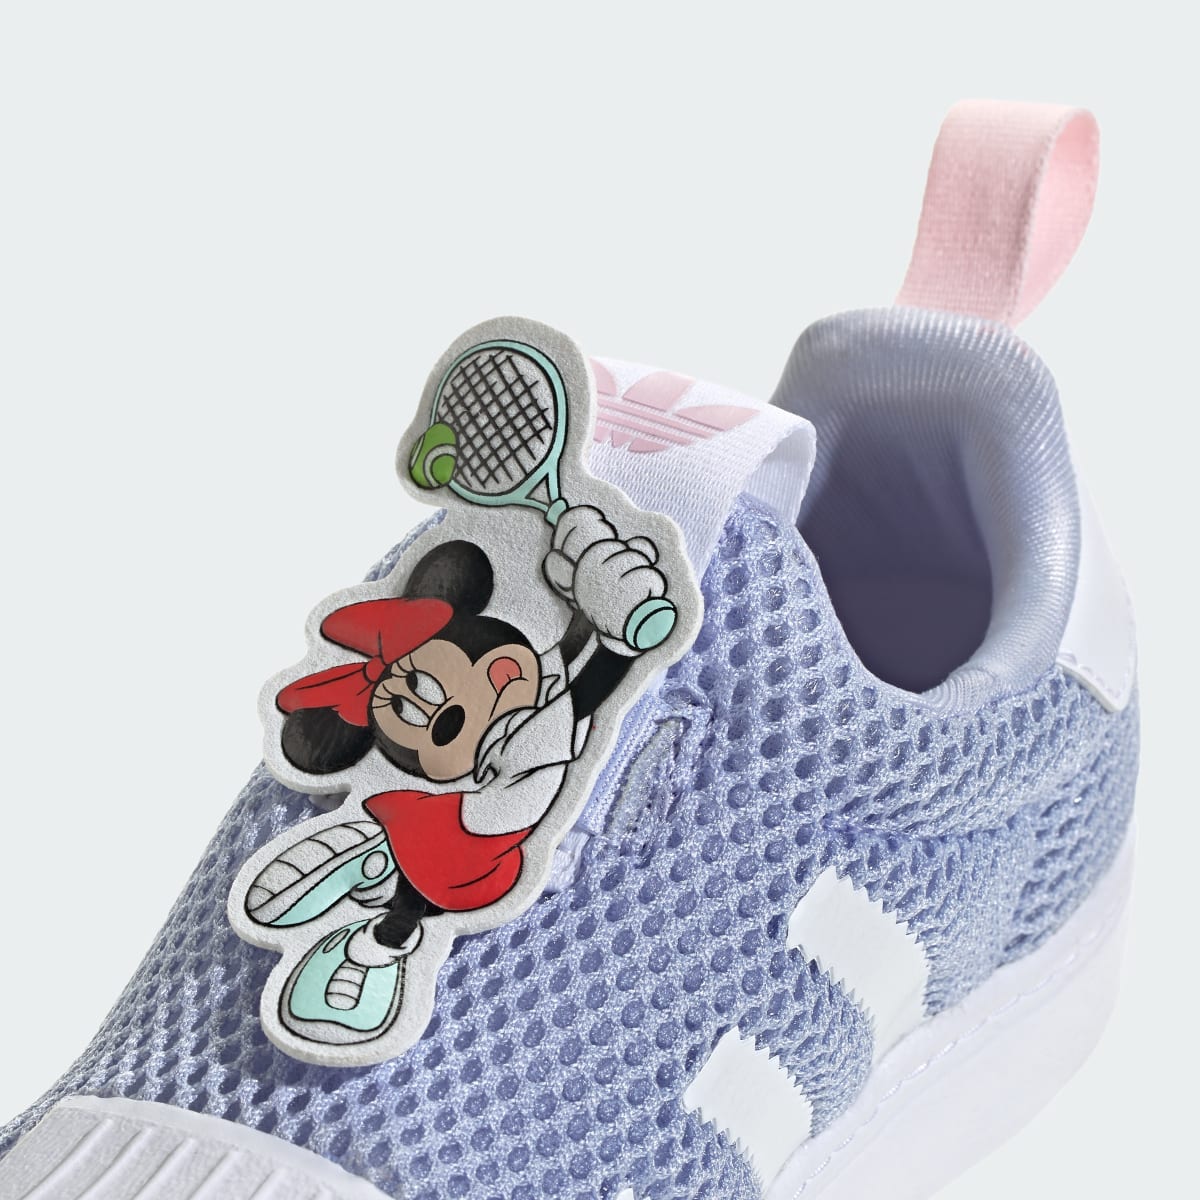 Adidas Sapatilhas Superstar 360 Rato Mickey adidas Originals x Disney – Criança. 9